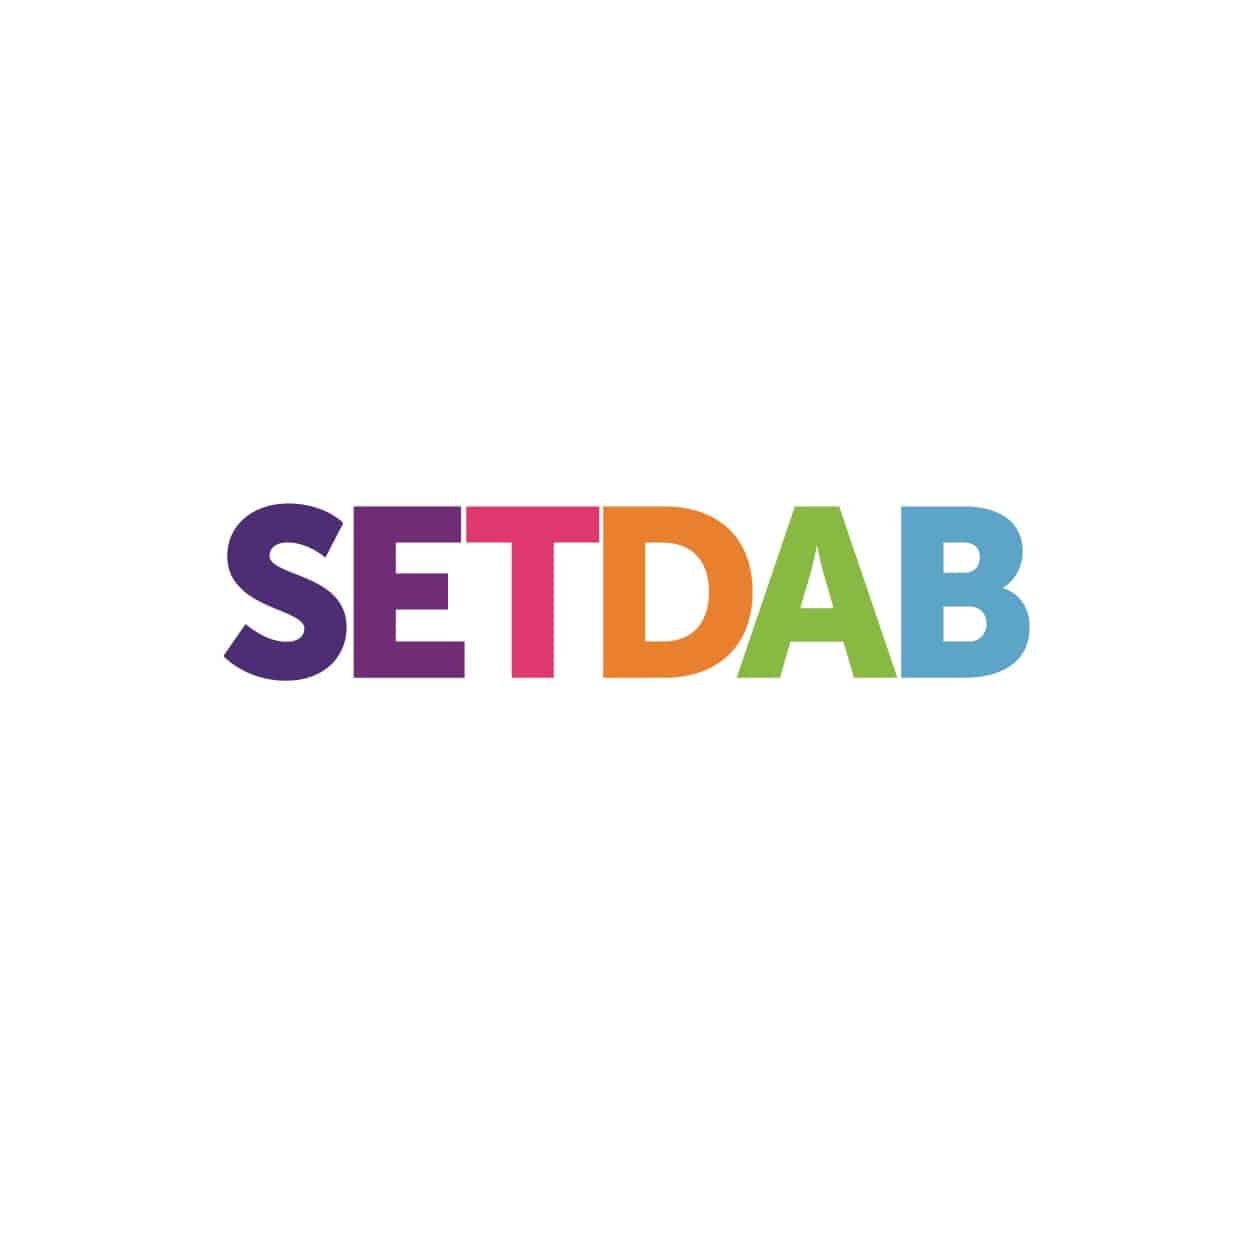 SETDAB Logo Vector 01 002